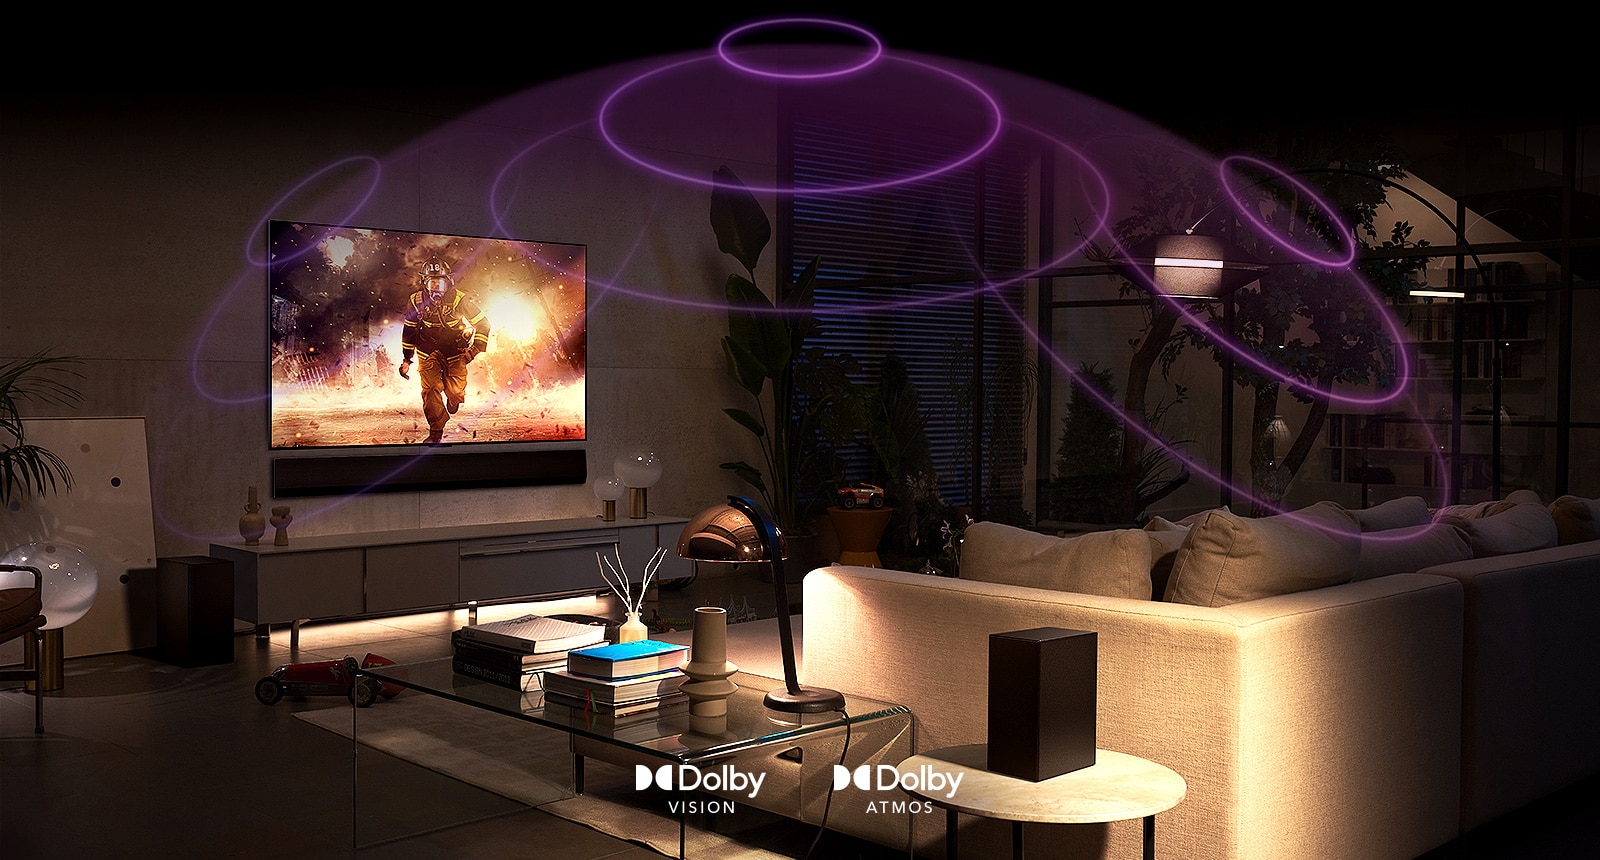 تصویری از تلویزیون OLED ال‌جی در اتاقی که در حال پخش یک فیلم اکشن است. امواج صوتی یک گنبد بین مبل و تلویزیون ایجاد می‌کند که صدای فضایی فراگیر را به تصویر می‌کشد.